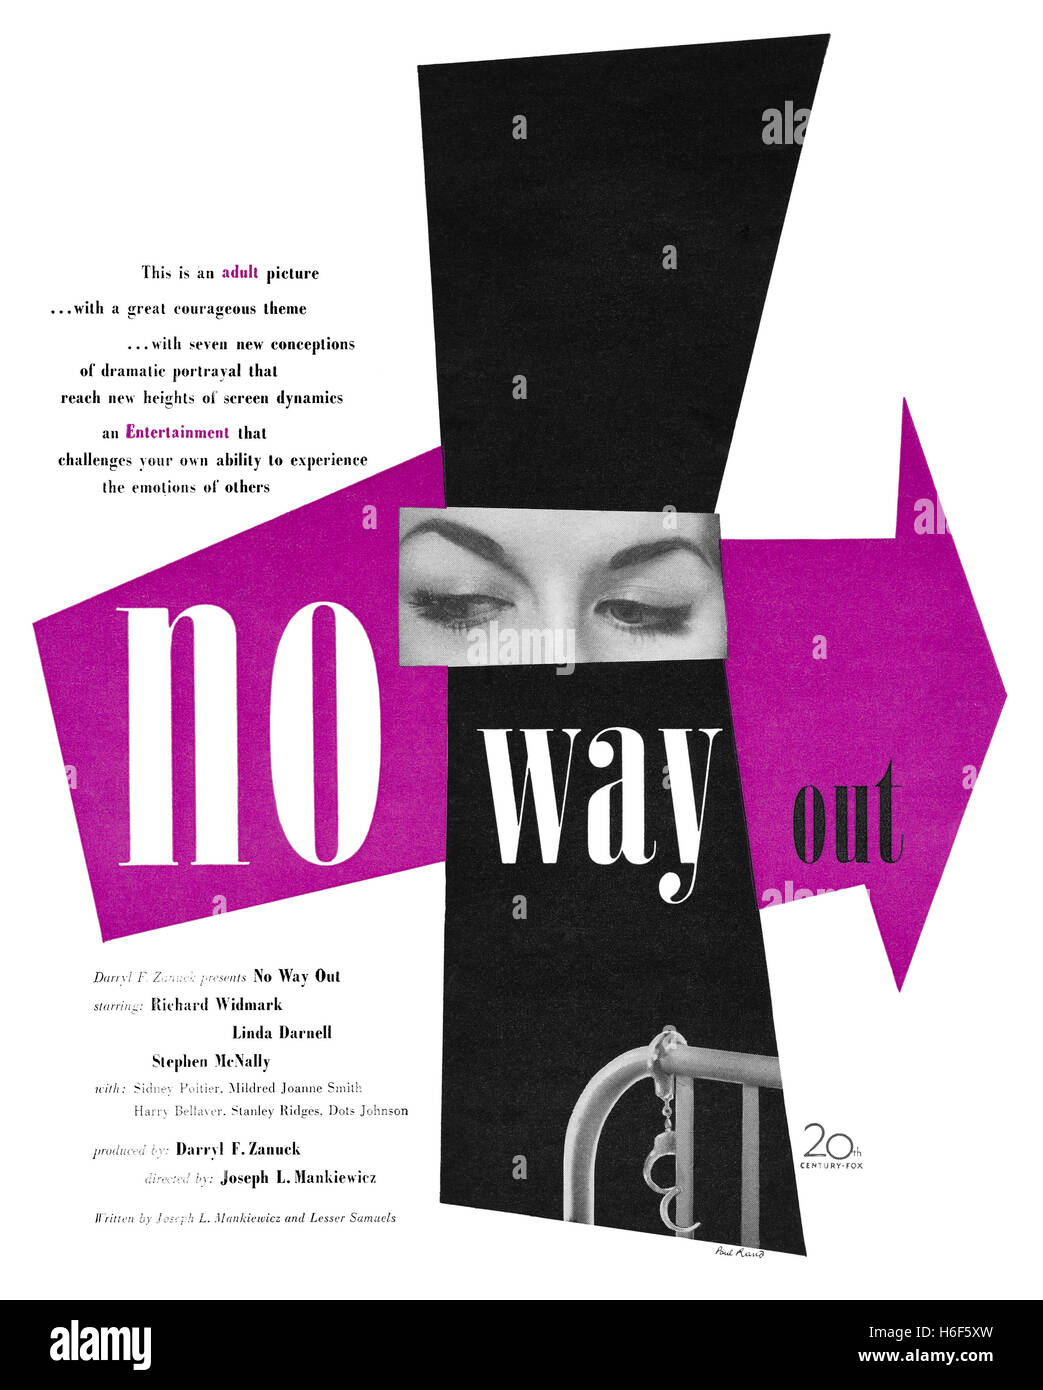 1950-nous Publicité, conçu par Paul Rand, pour le film sans issue avec Richard Widmark, Linda Darnell et Stephen McNally Banque D'Images